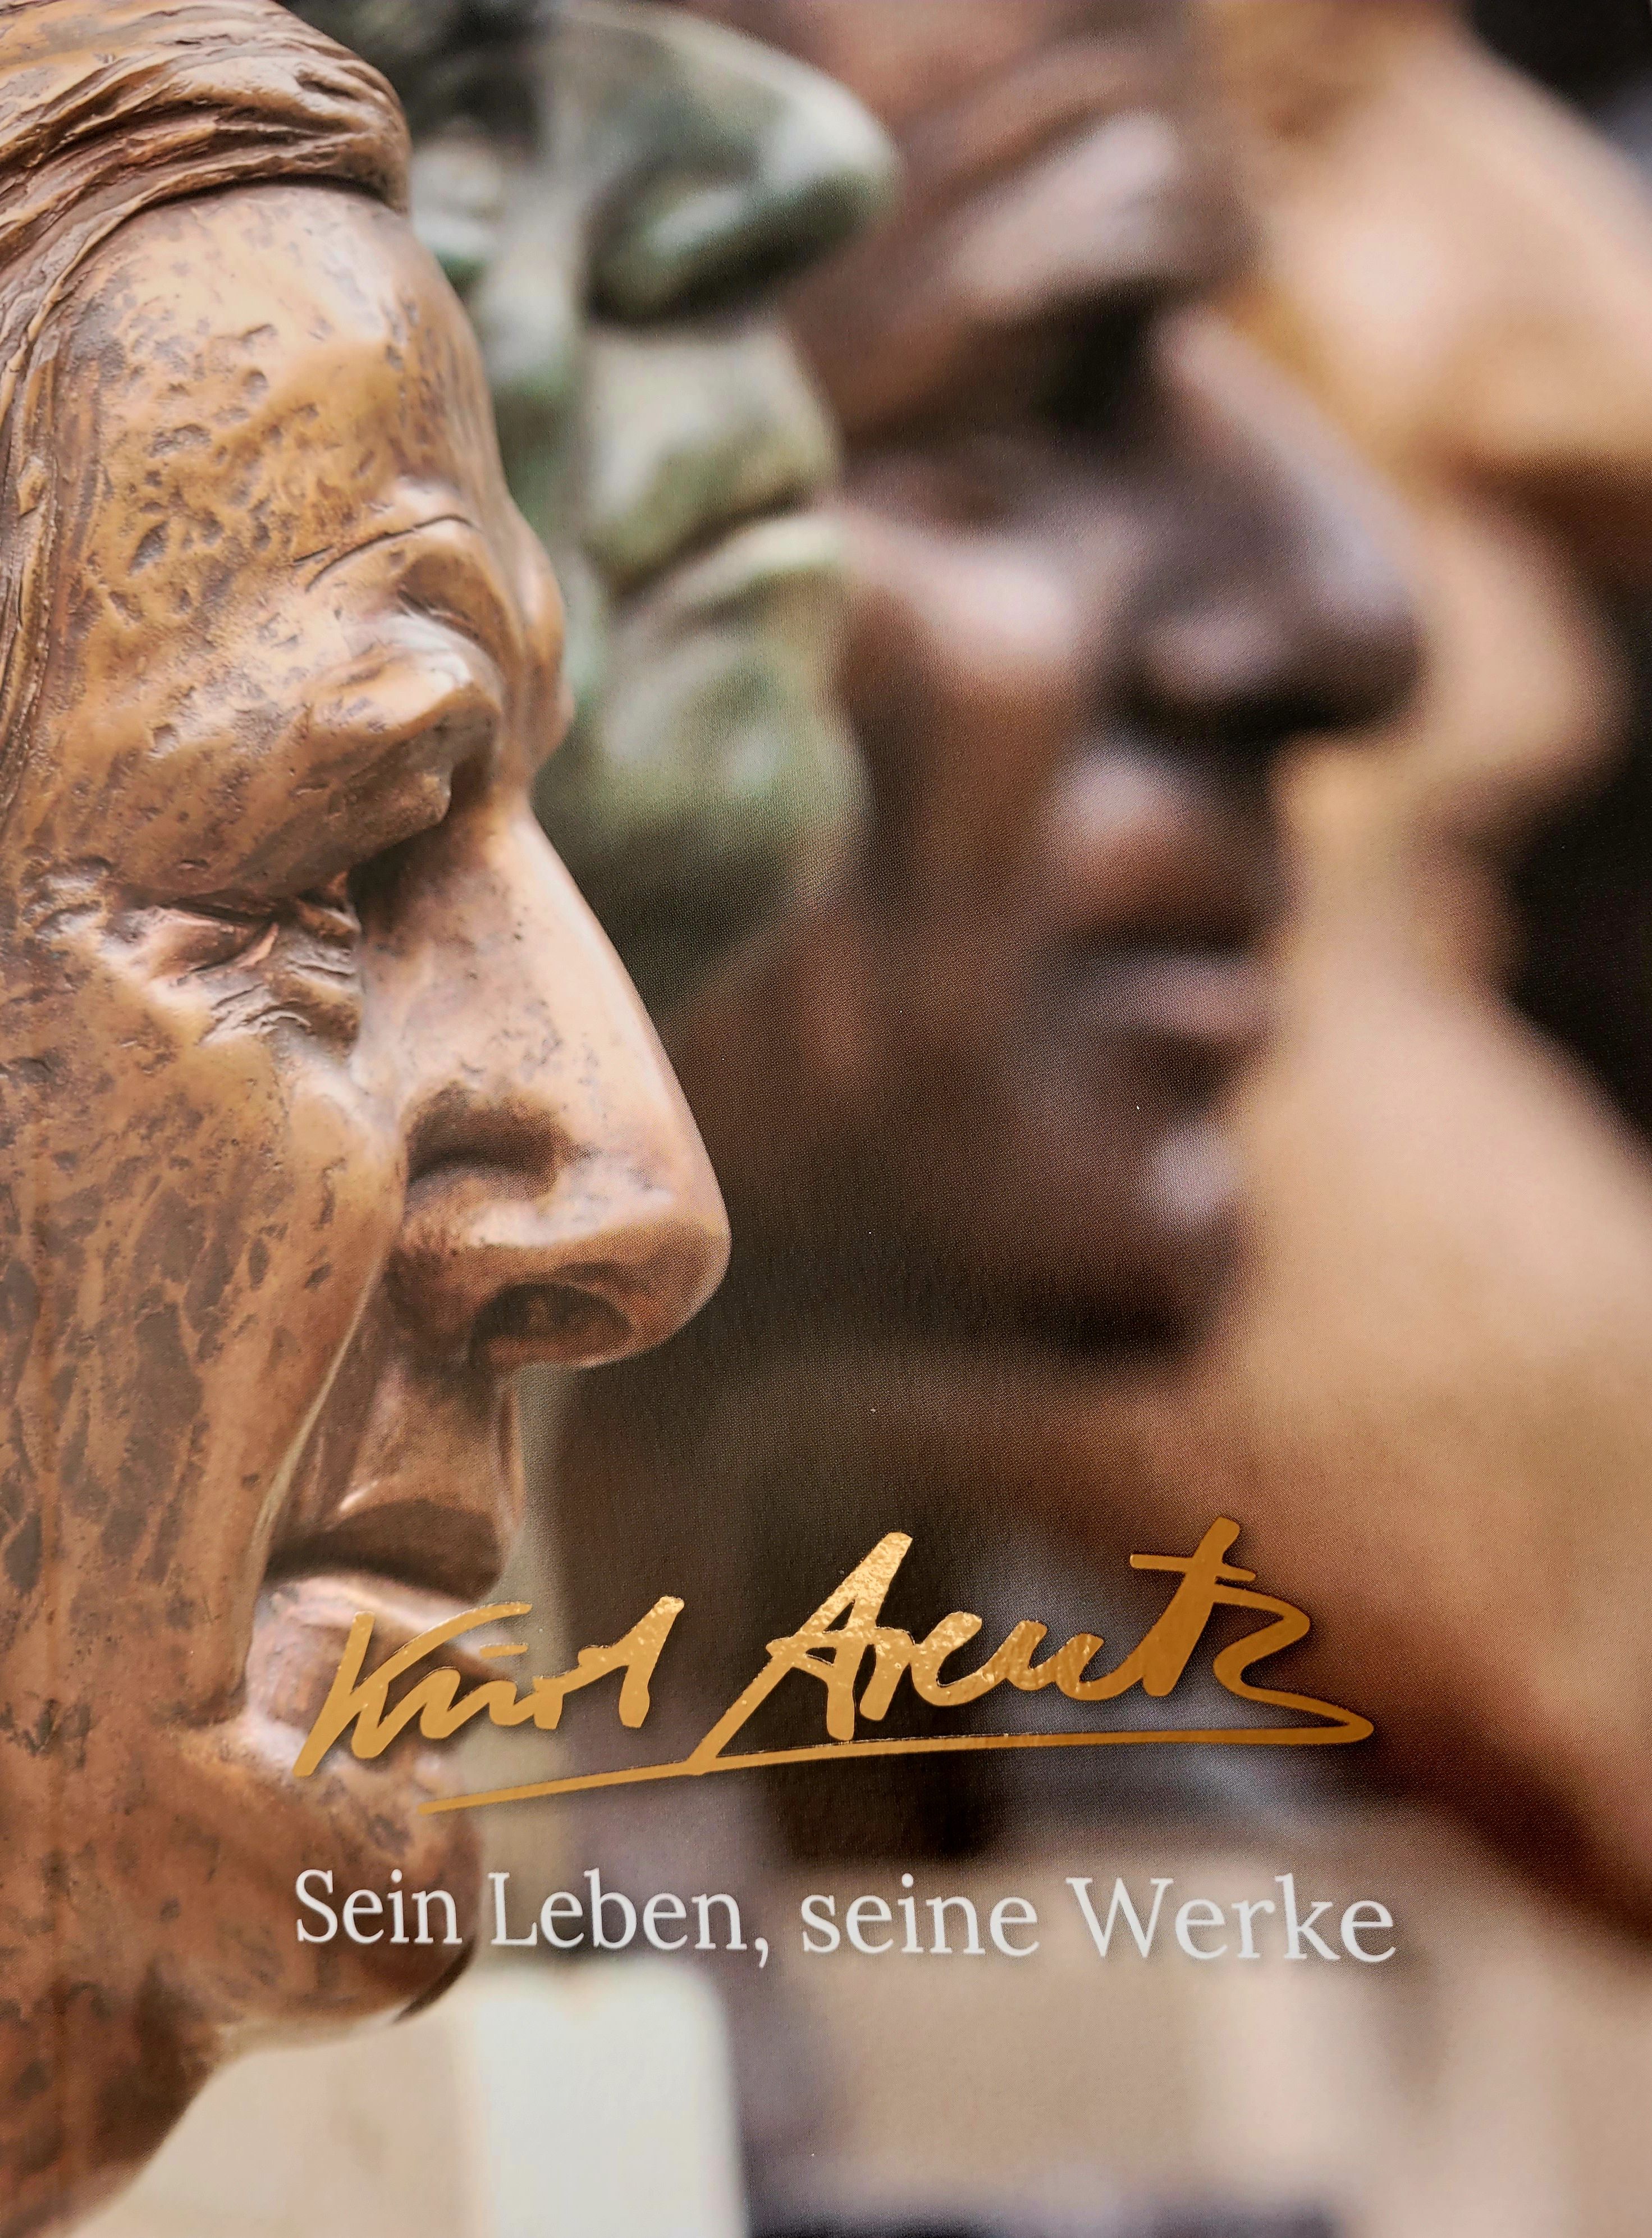 Bildhauer Kurt Arentz, neues Buch 2022 "Sein Leben, seine Werke"